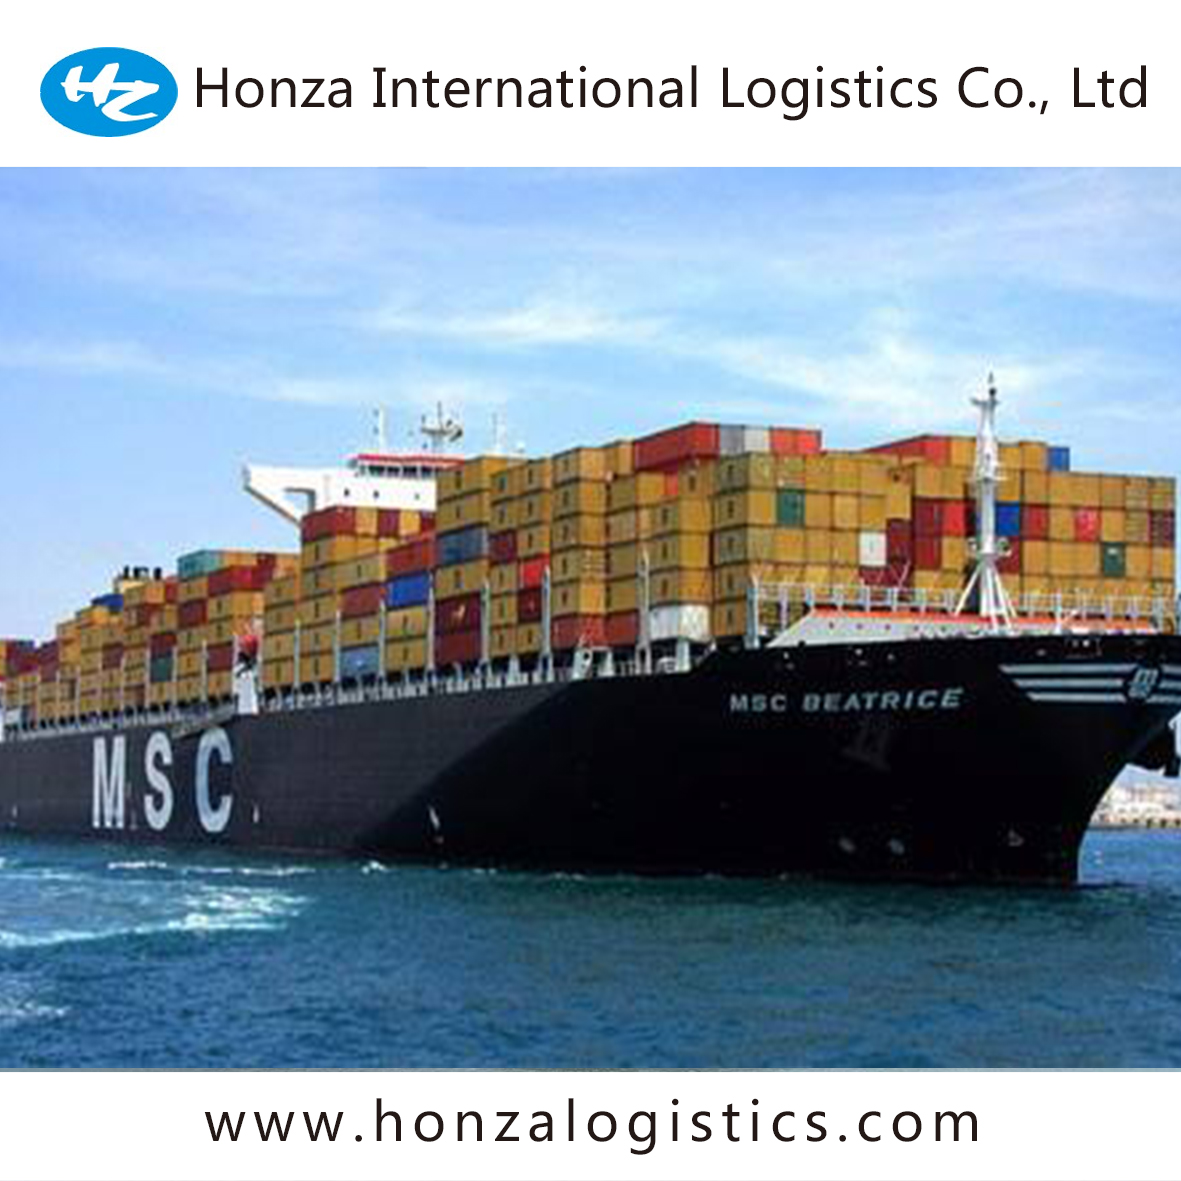 ocean freight logistics